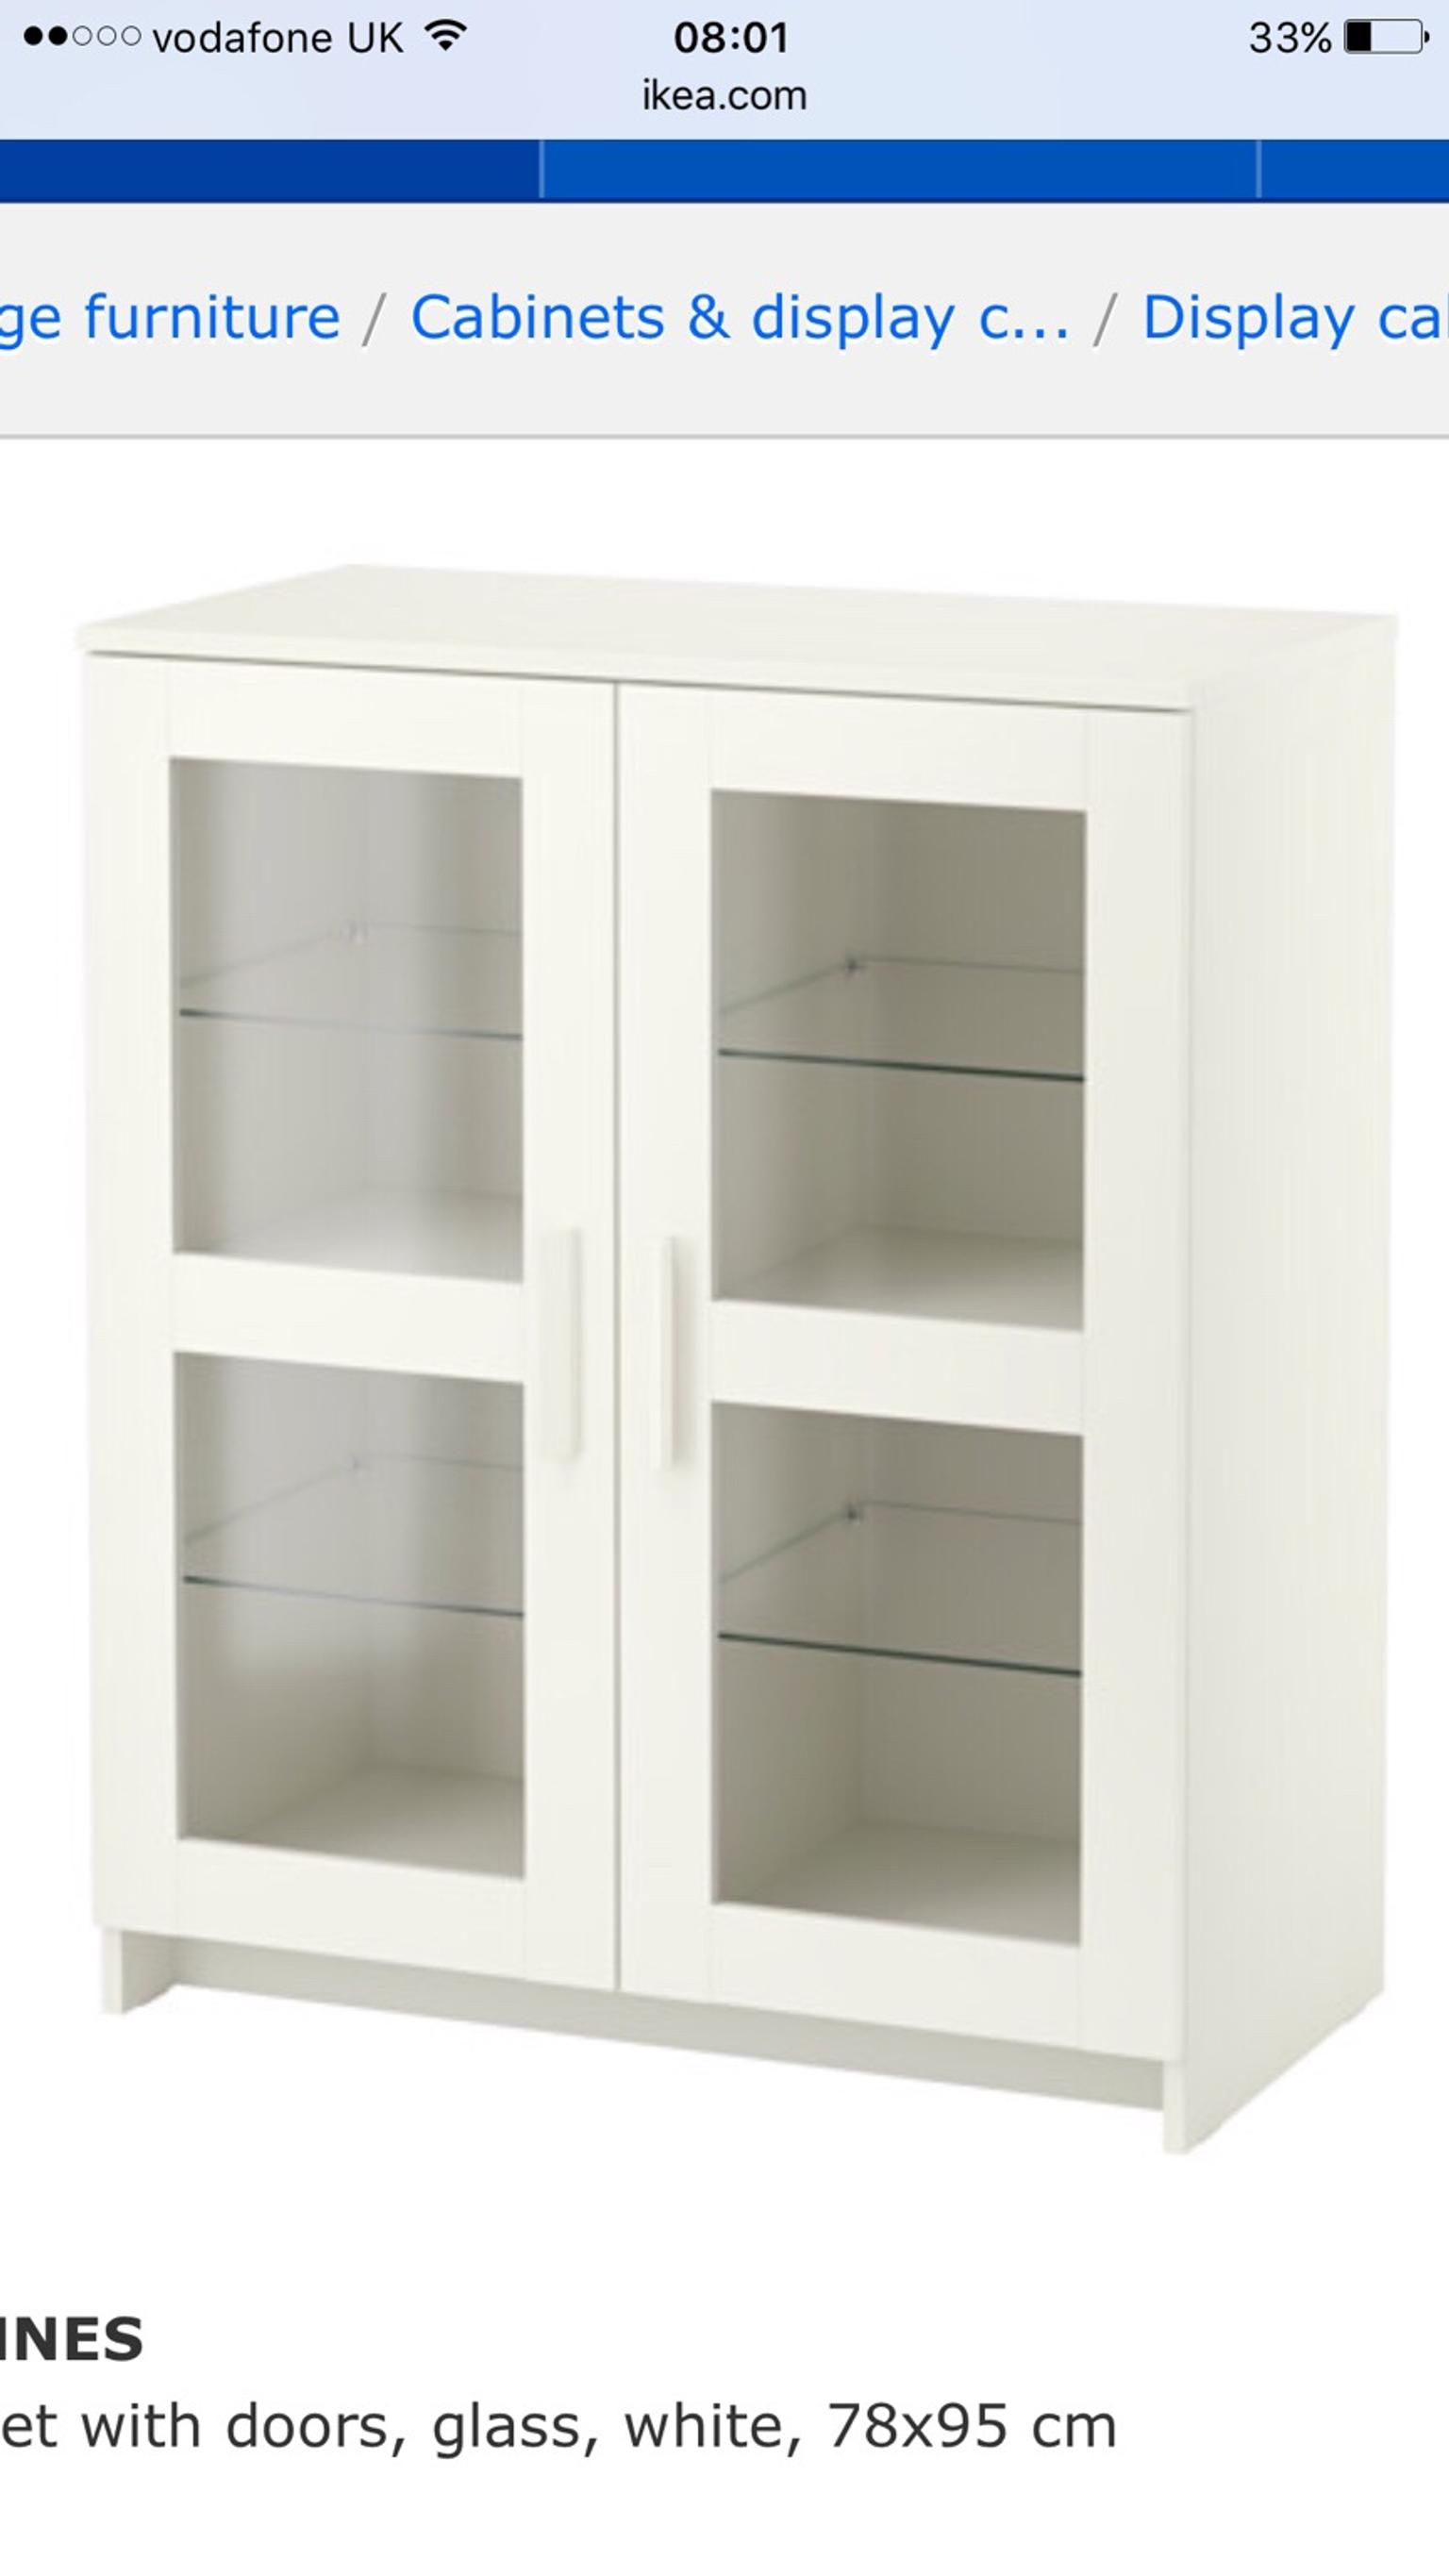 White Glass Cabinets In L11 Liverpool Fur 80 00 Zum Verkauf